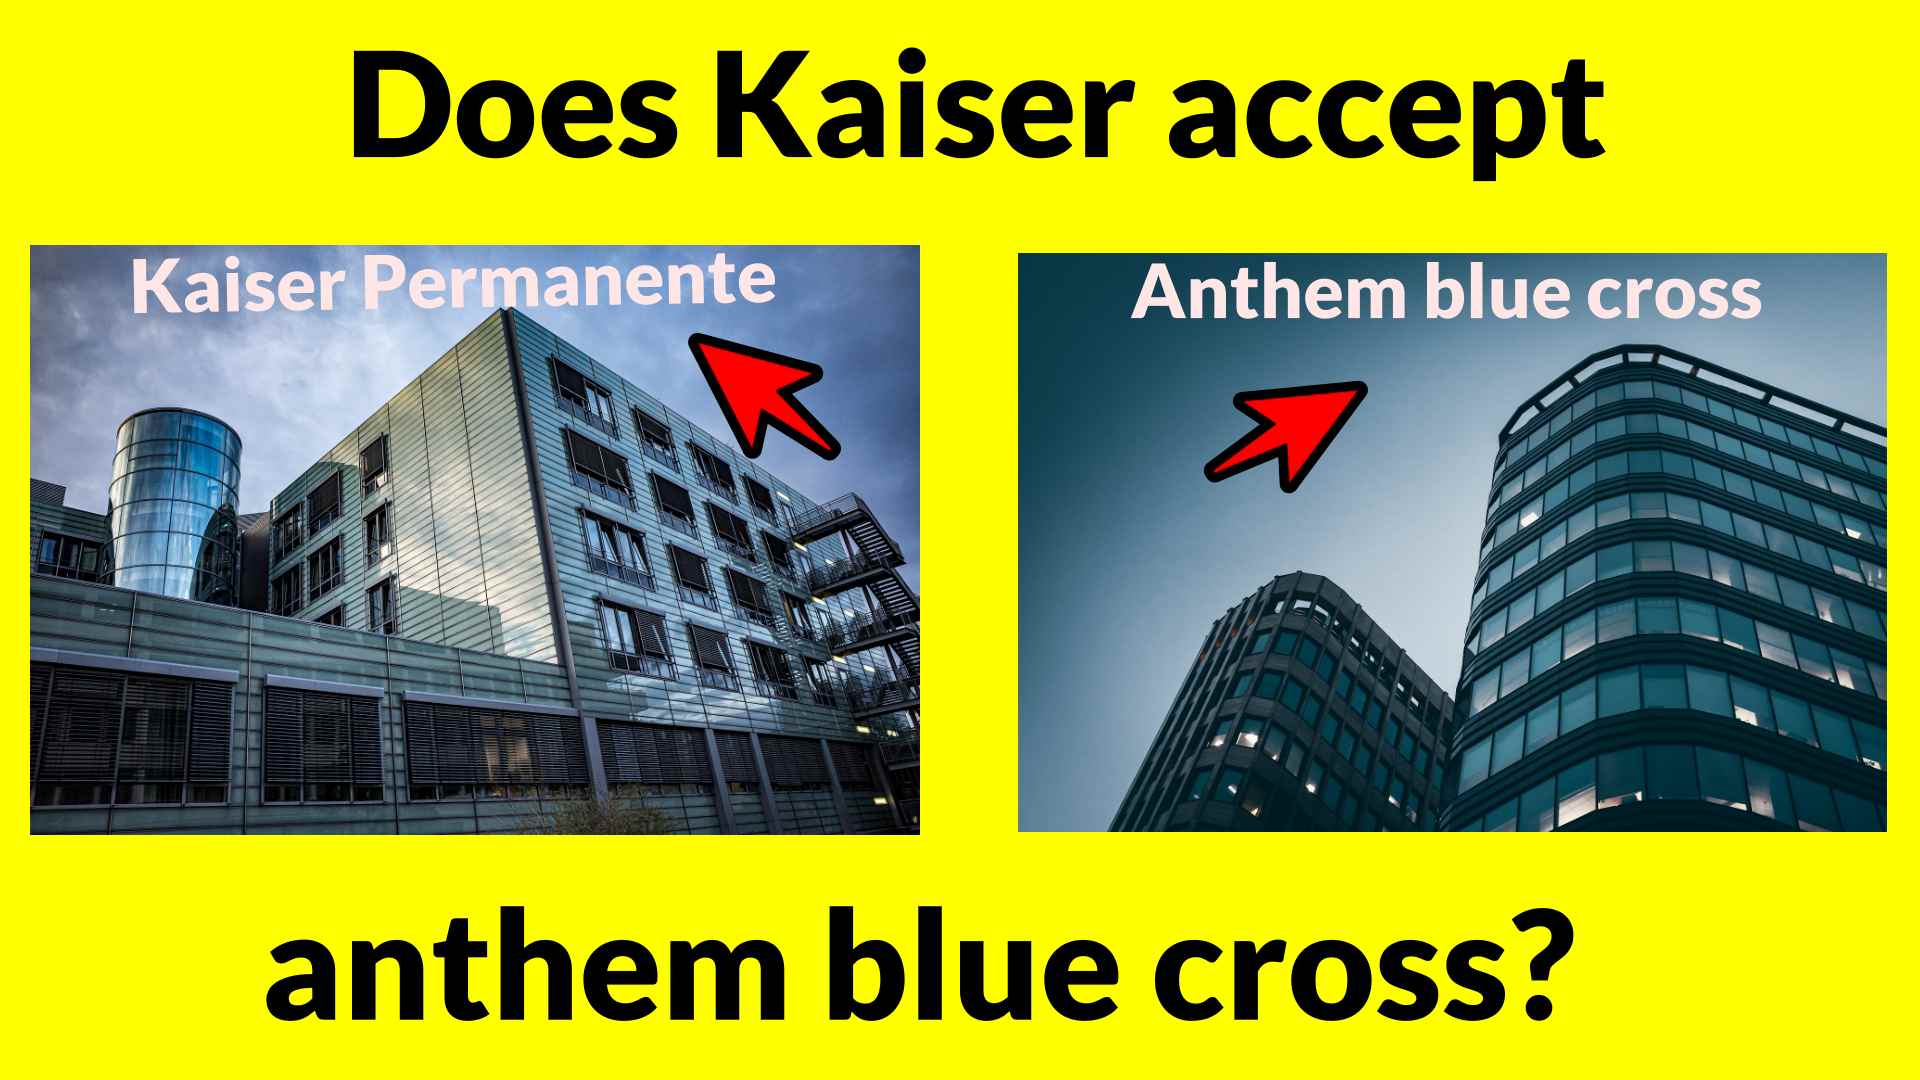 Does Kaiser accept anthem blue cross